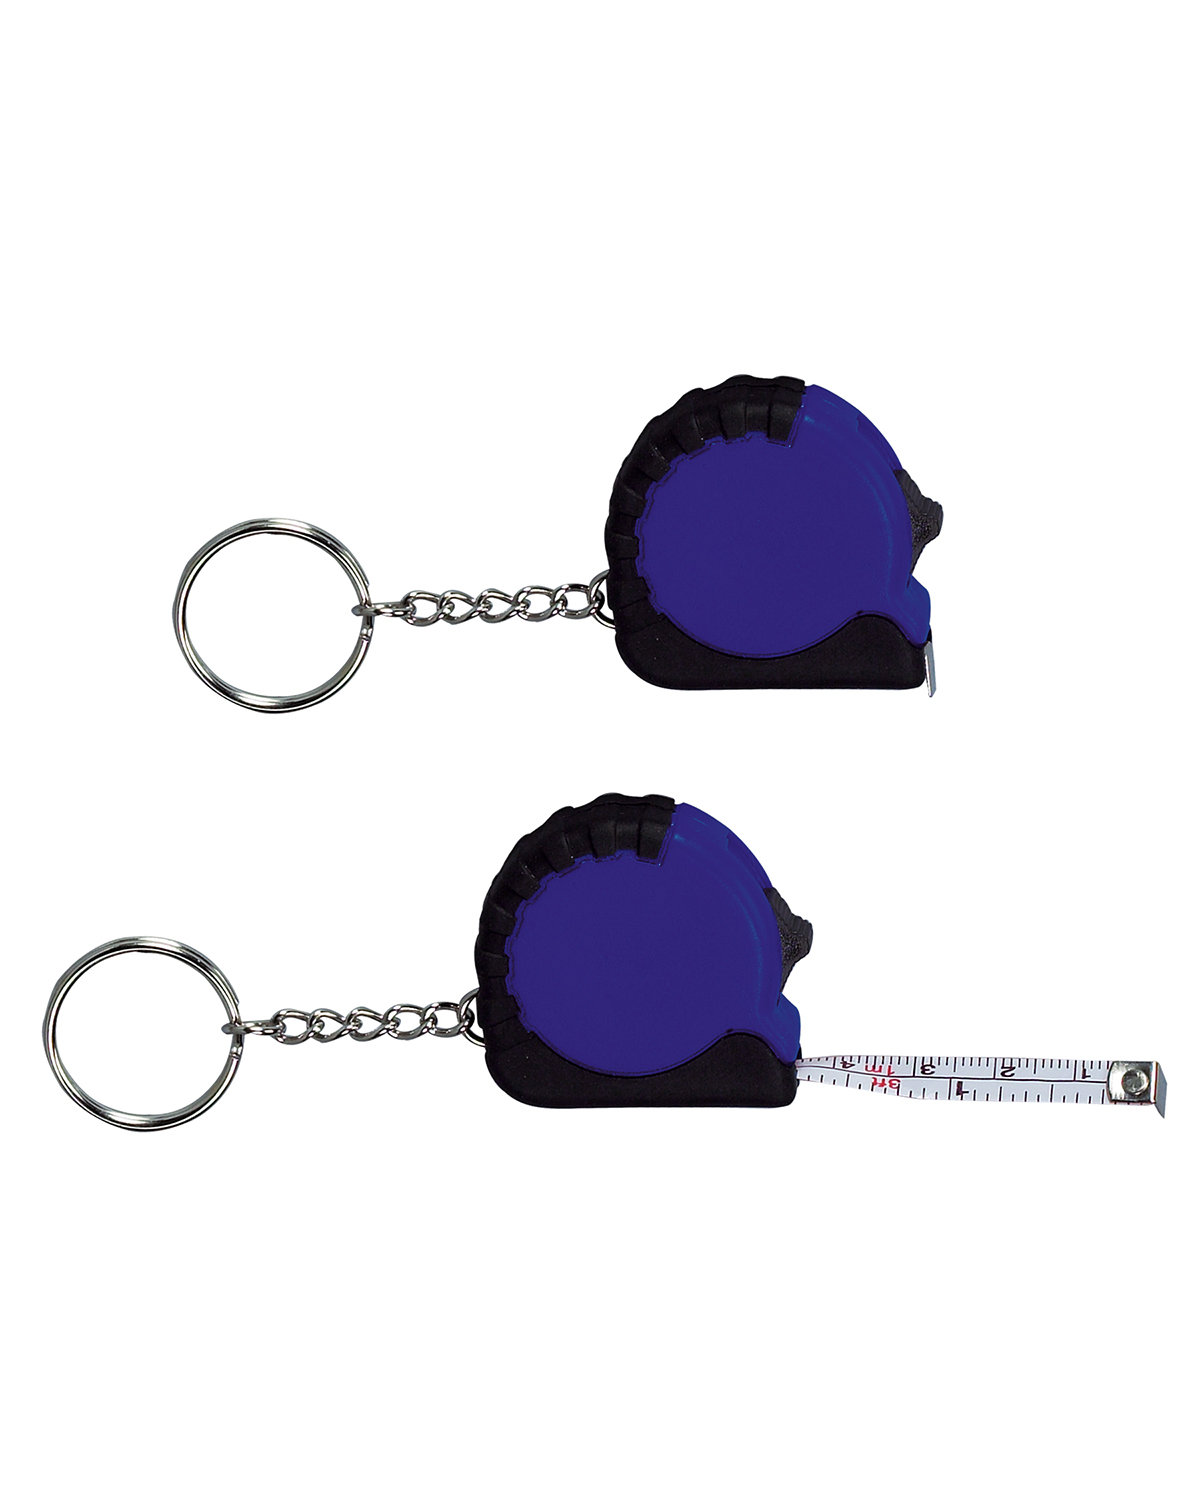 Prime Line Mini Grip Tape Measure Key Chain 3.25' blue 